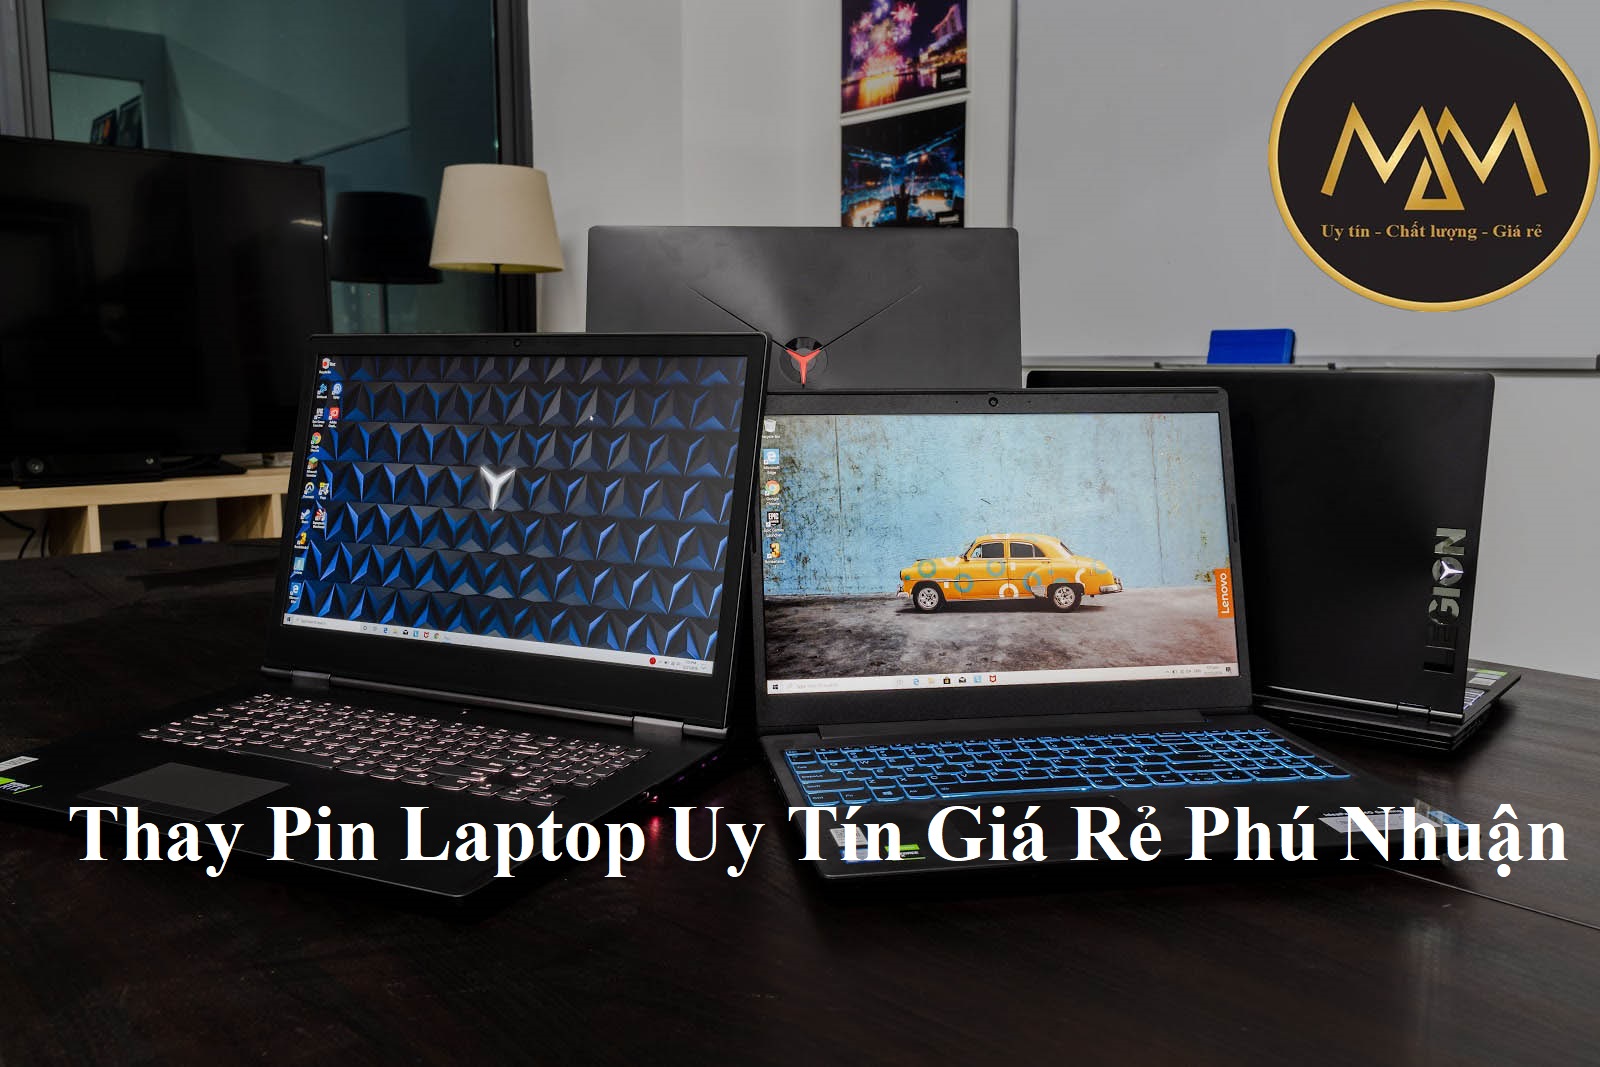 Thay Pin Laptop Uy Tín Giá Rẻ Phú Nhuận